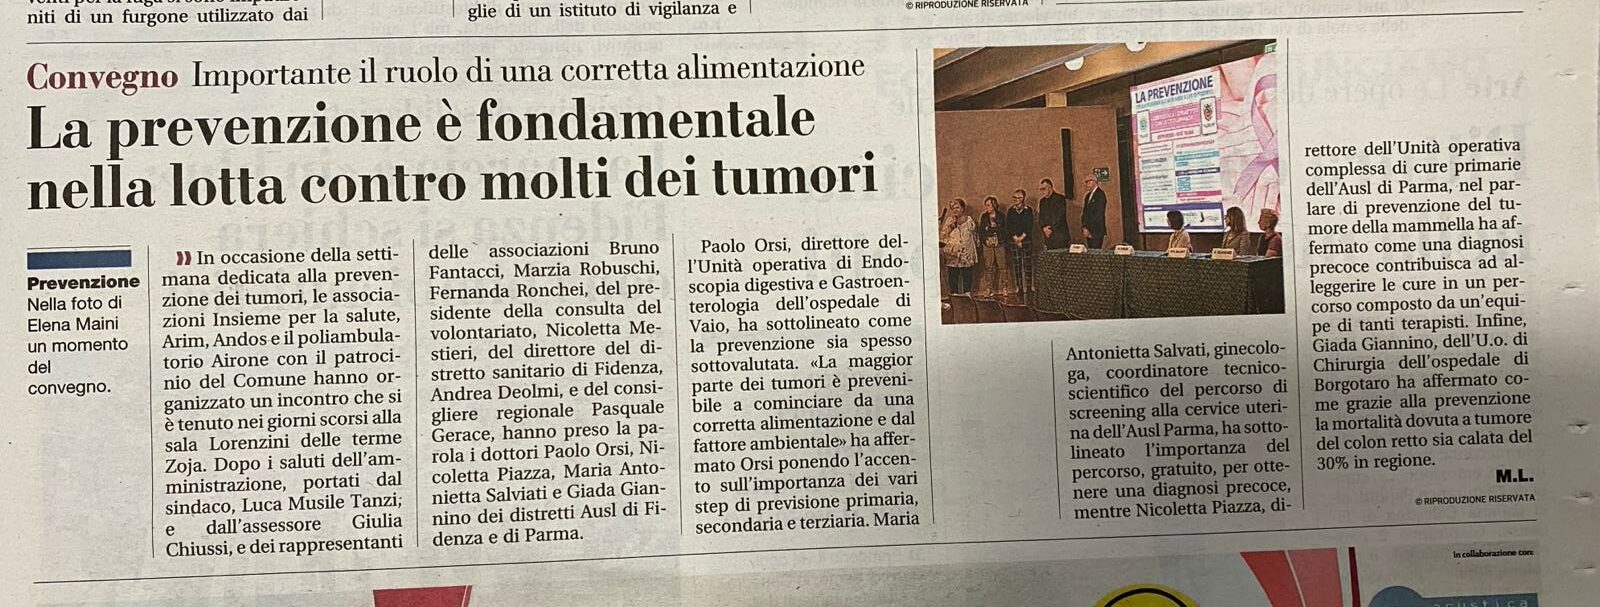 Articolo Gazzetta di Parma: la prevenzione è fondamentale nella lotta contro molti dei tumori